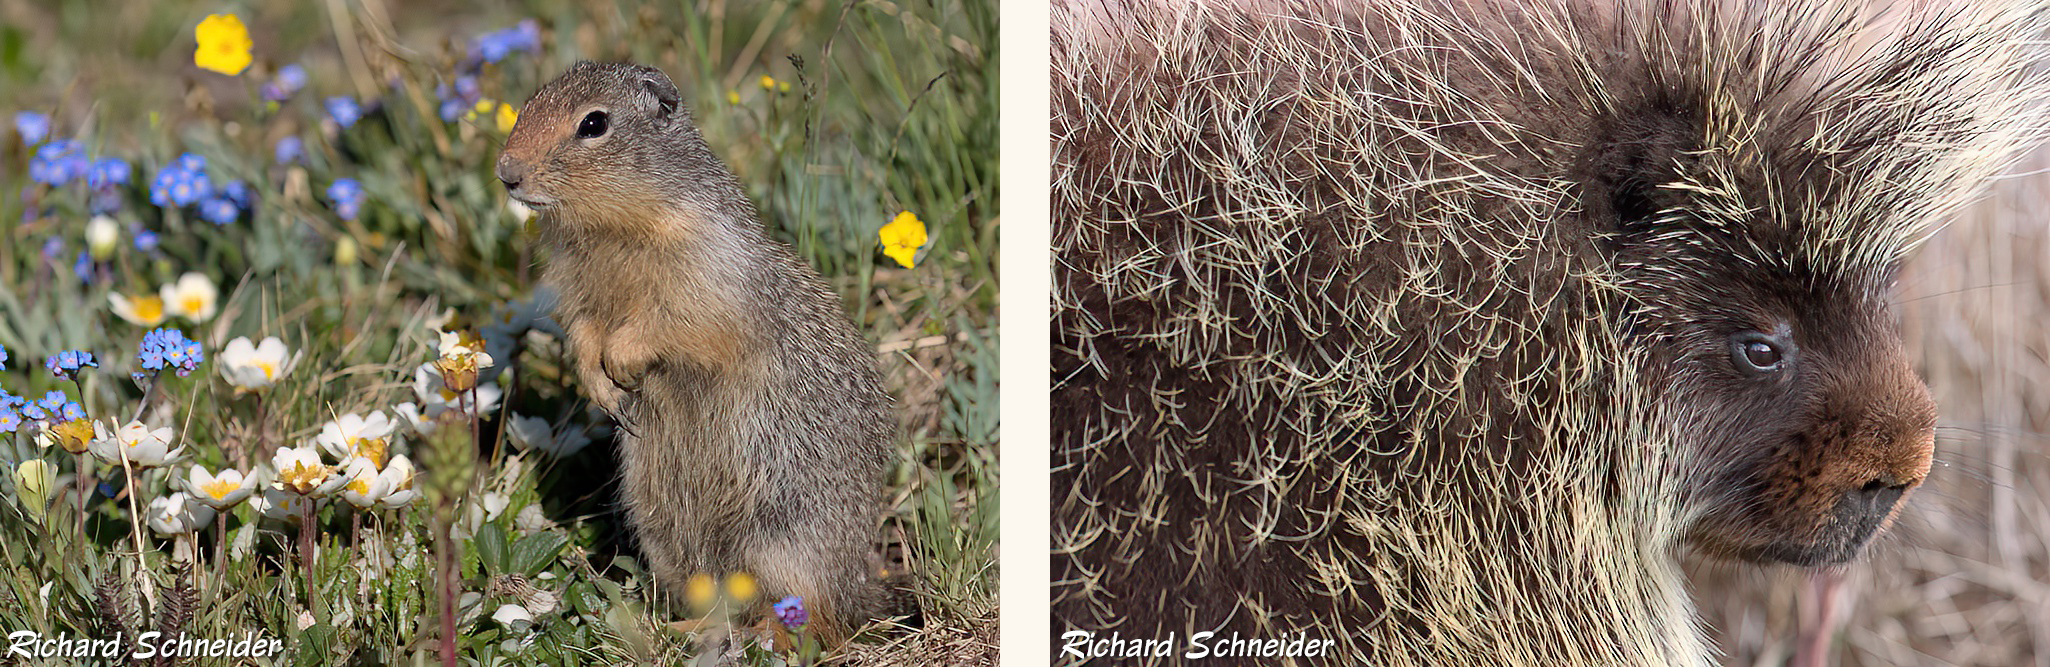 Squirrel and porcupine - R Schneider